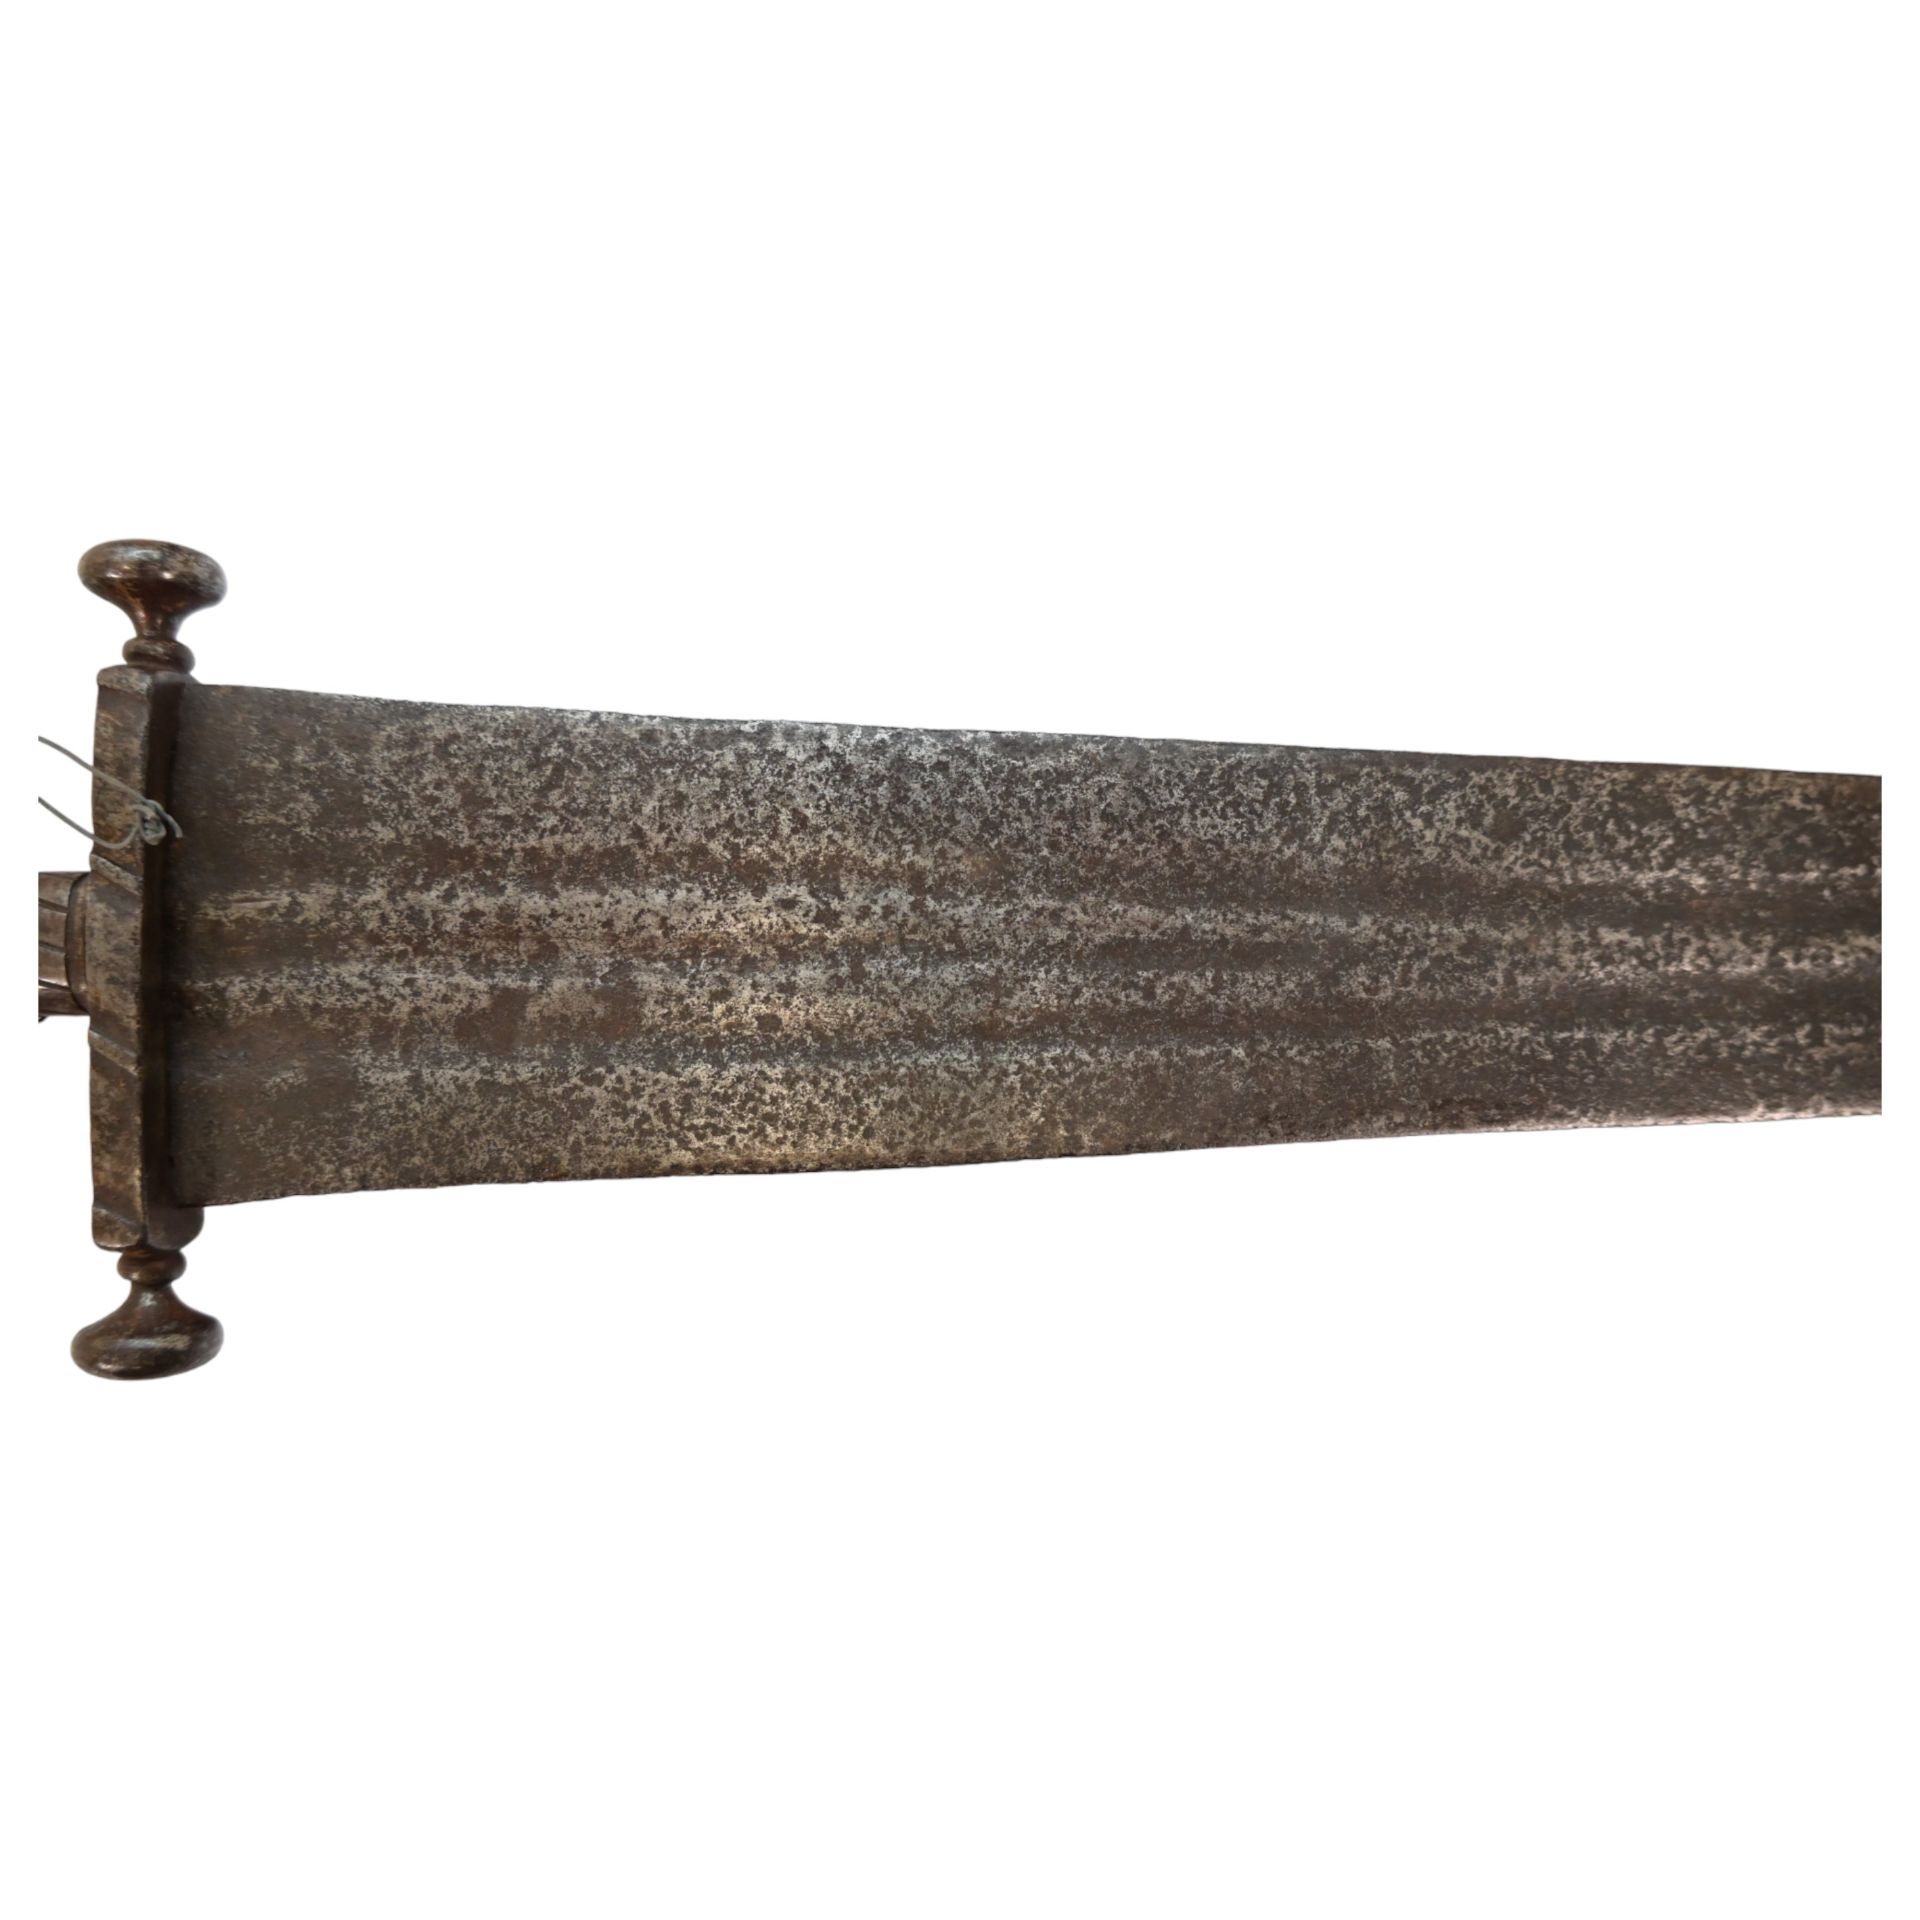 Rare Cinquedea type Sword, 16-17th Century, Italy. - Bild 9 aus 14